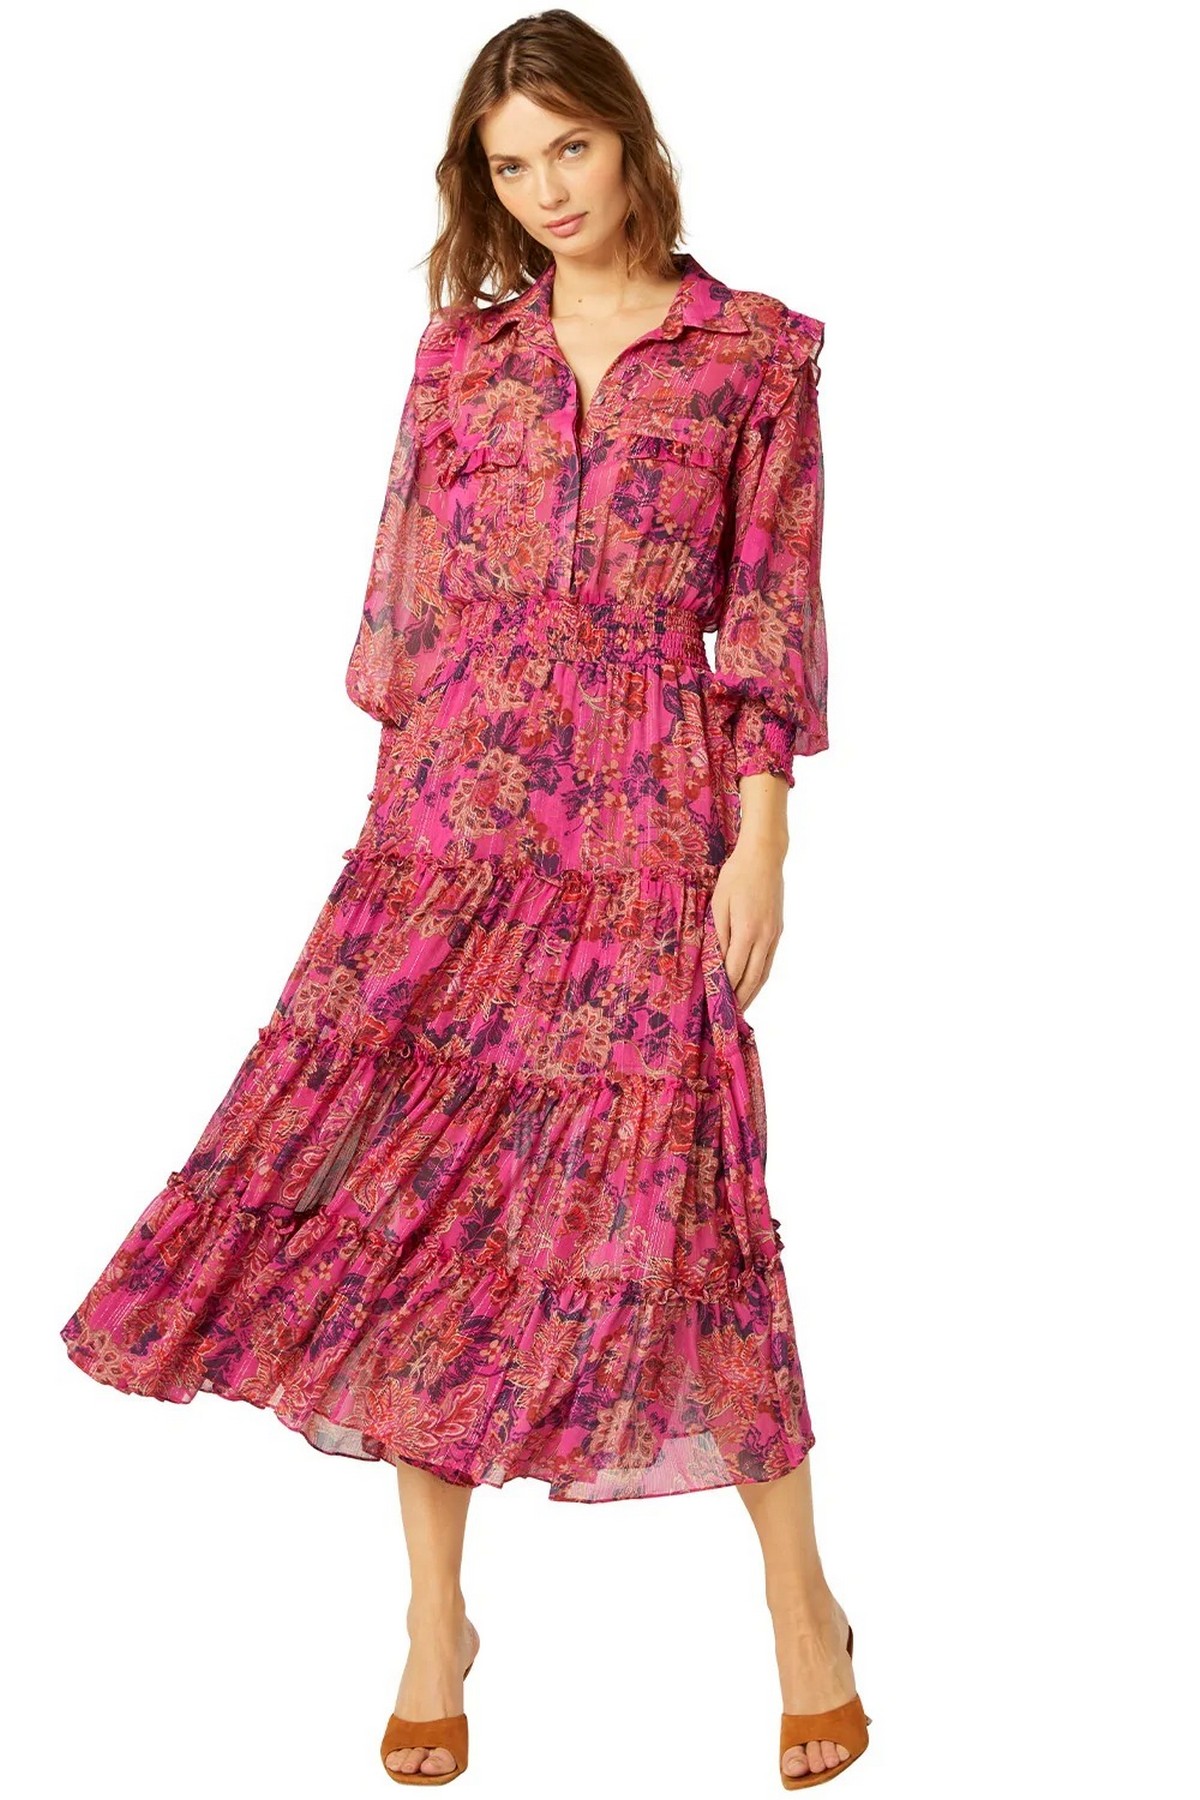 Kleed lang batik-print in de kleur rood fuchsia van het merk Misa